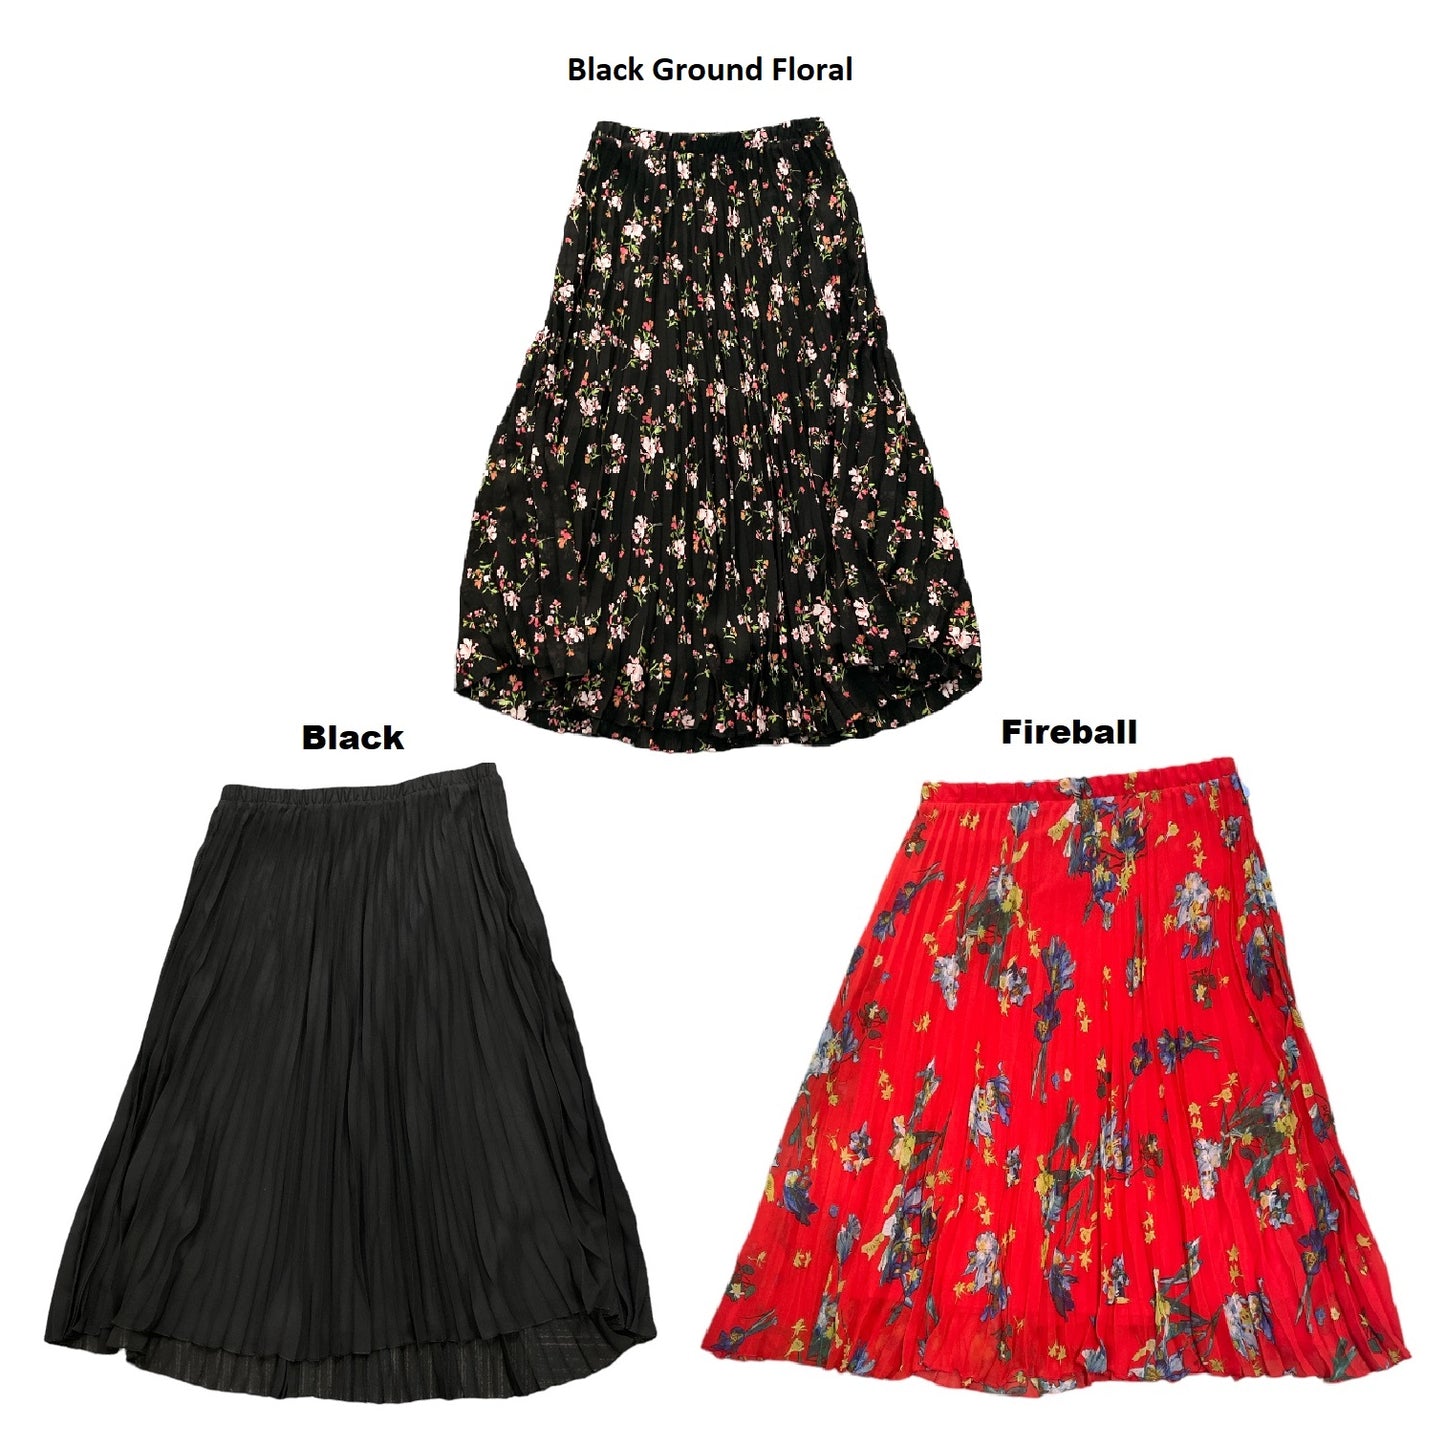 Vince Camuto Ladies Detailed Pull On Pleated Midi Skirt